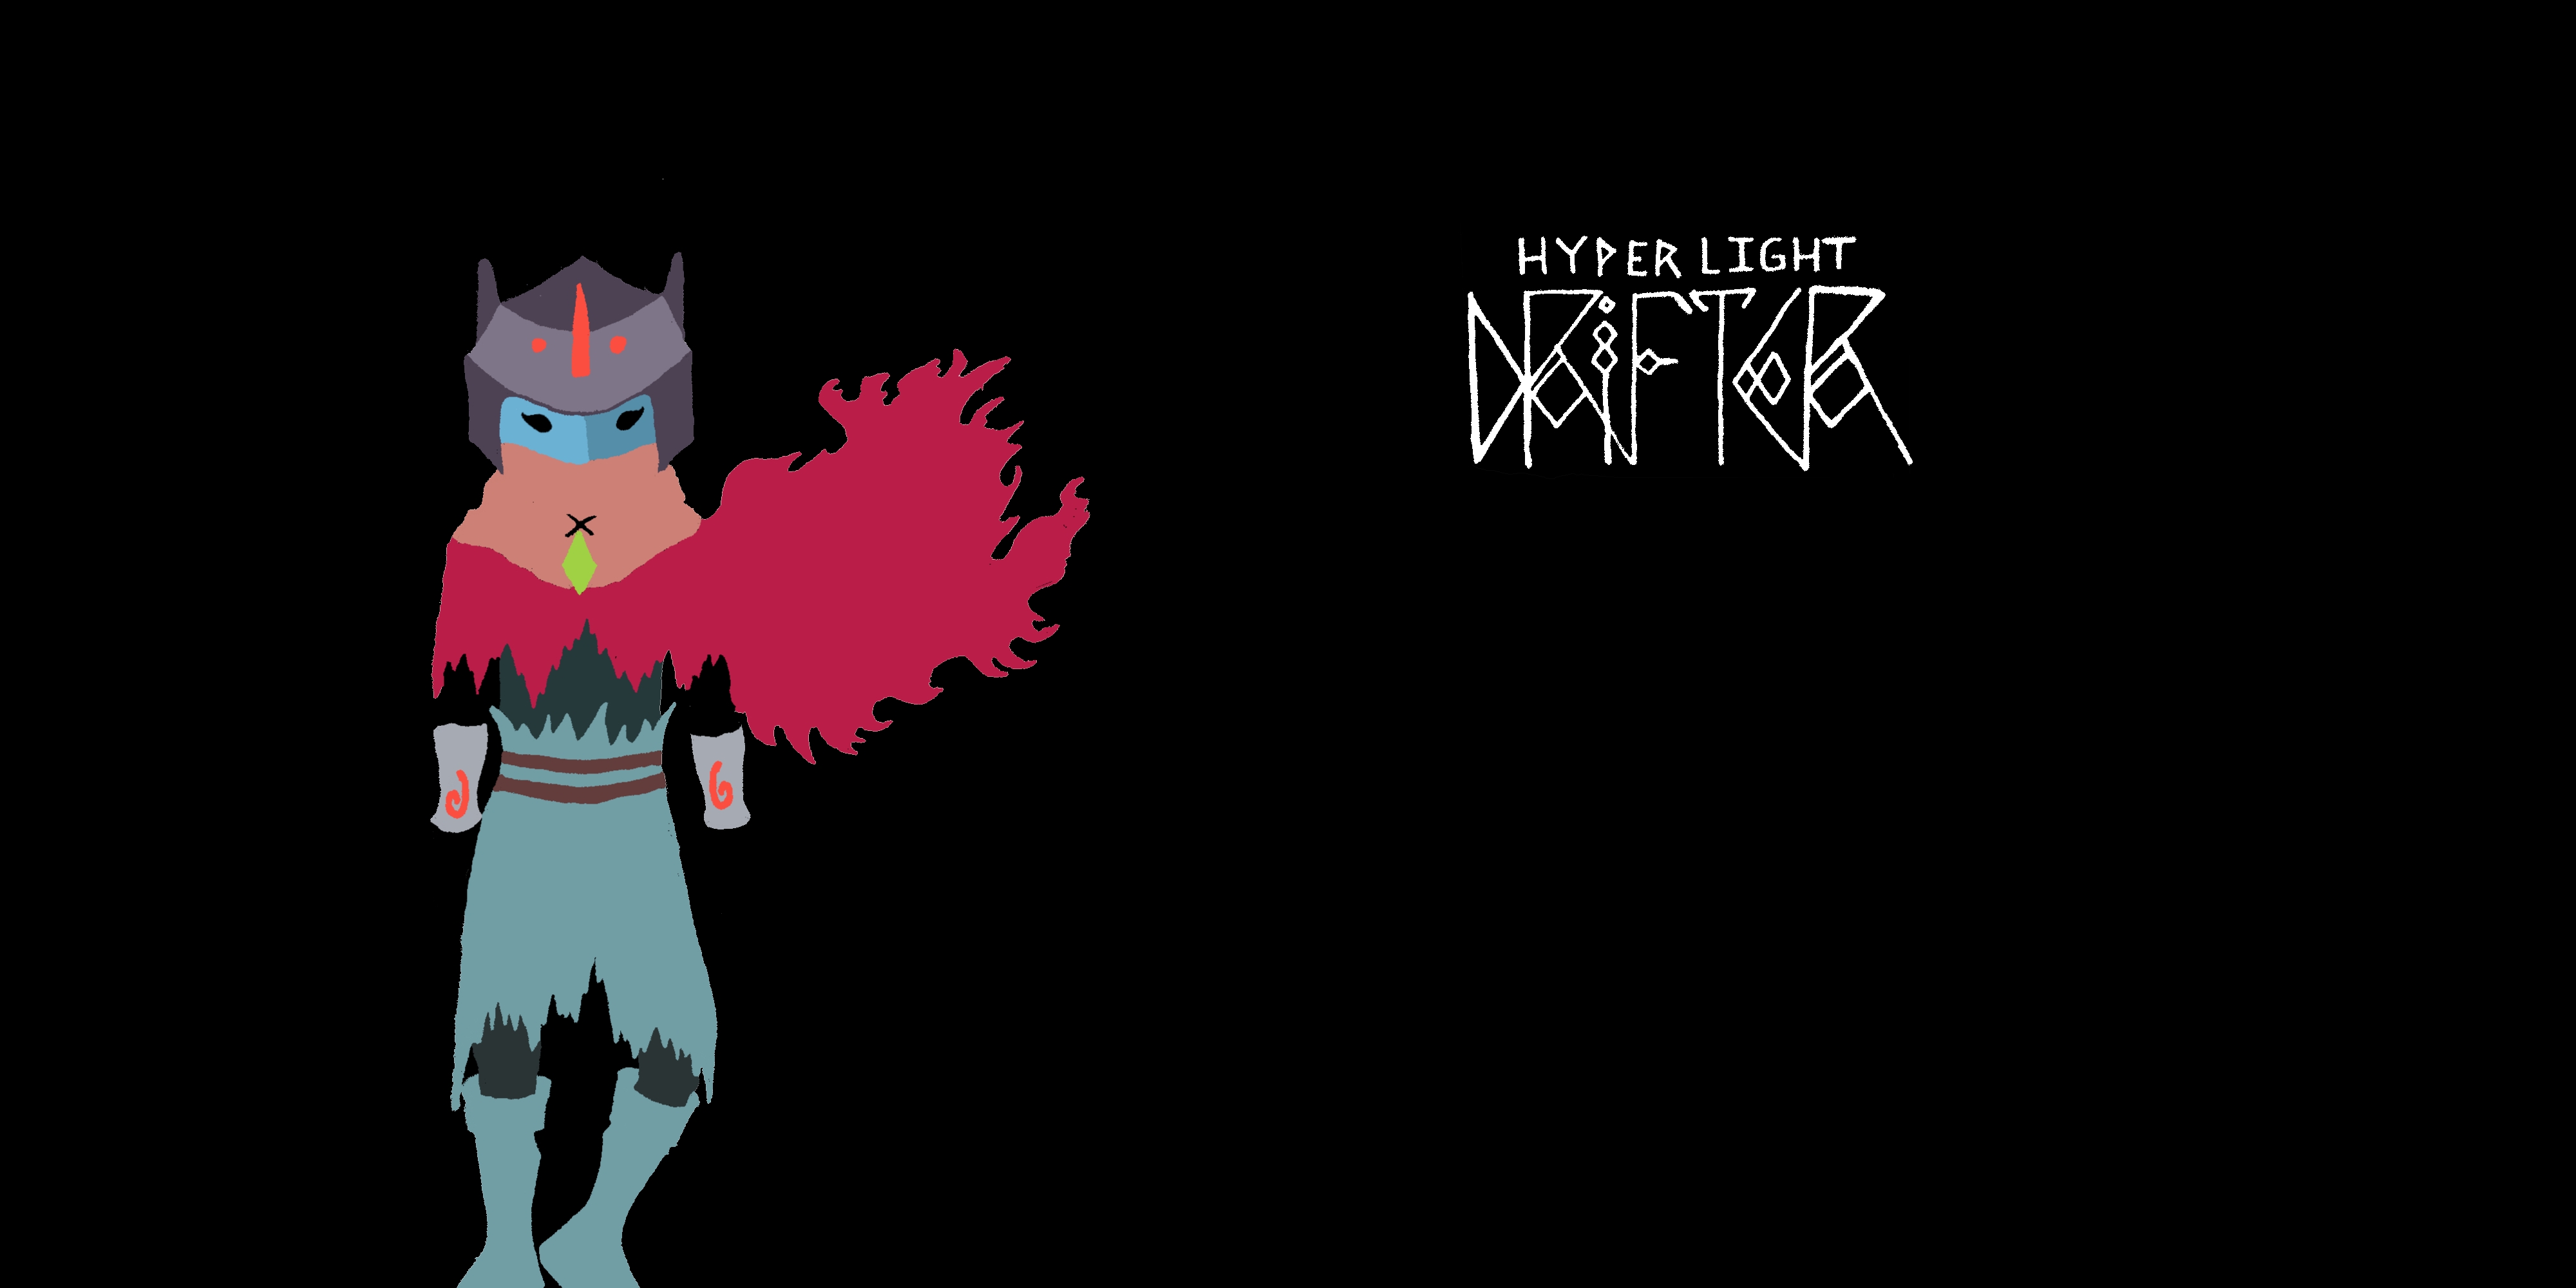 hyper light drifter wallpaper,cartoon,graphic design,text,fictional character,animation